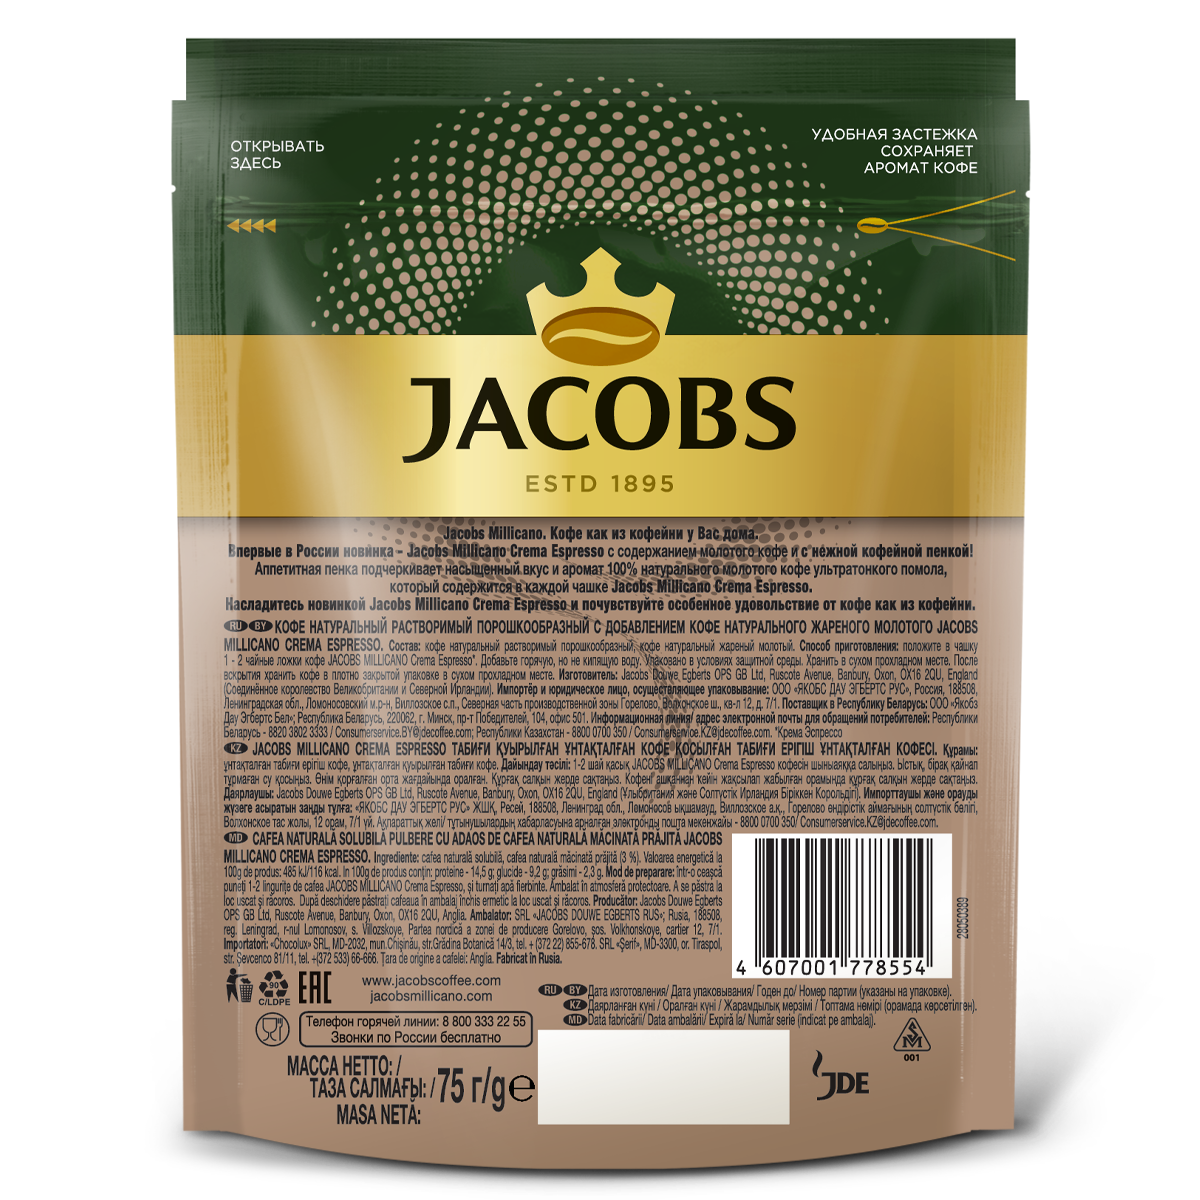 Кофе растворимый миликано. Кофе Jacobs Millicano crema Espresso. Якобс Миликано crema Espresso. Jacobs Millicano 75. Кофе Jacobs Millicano crema.